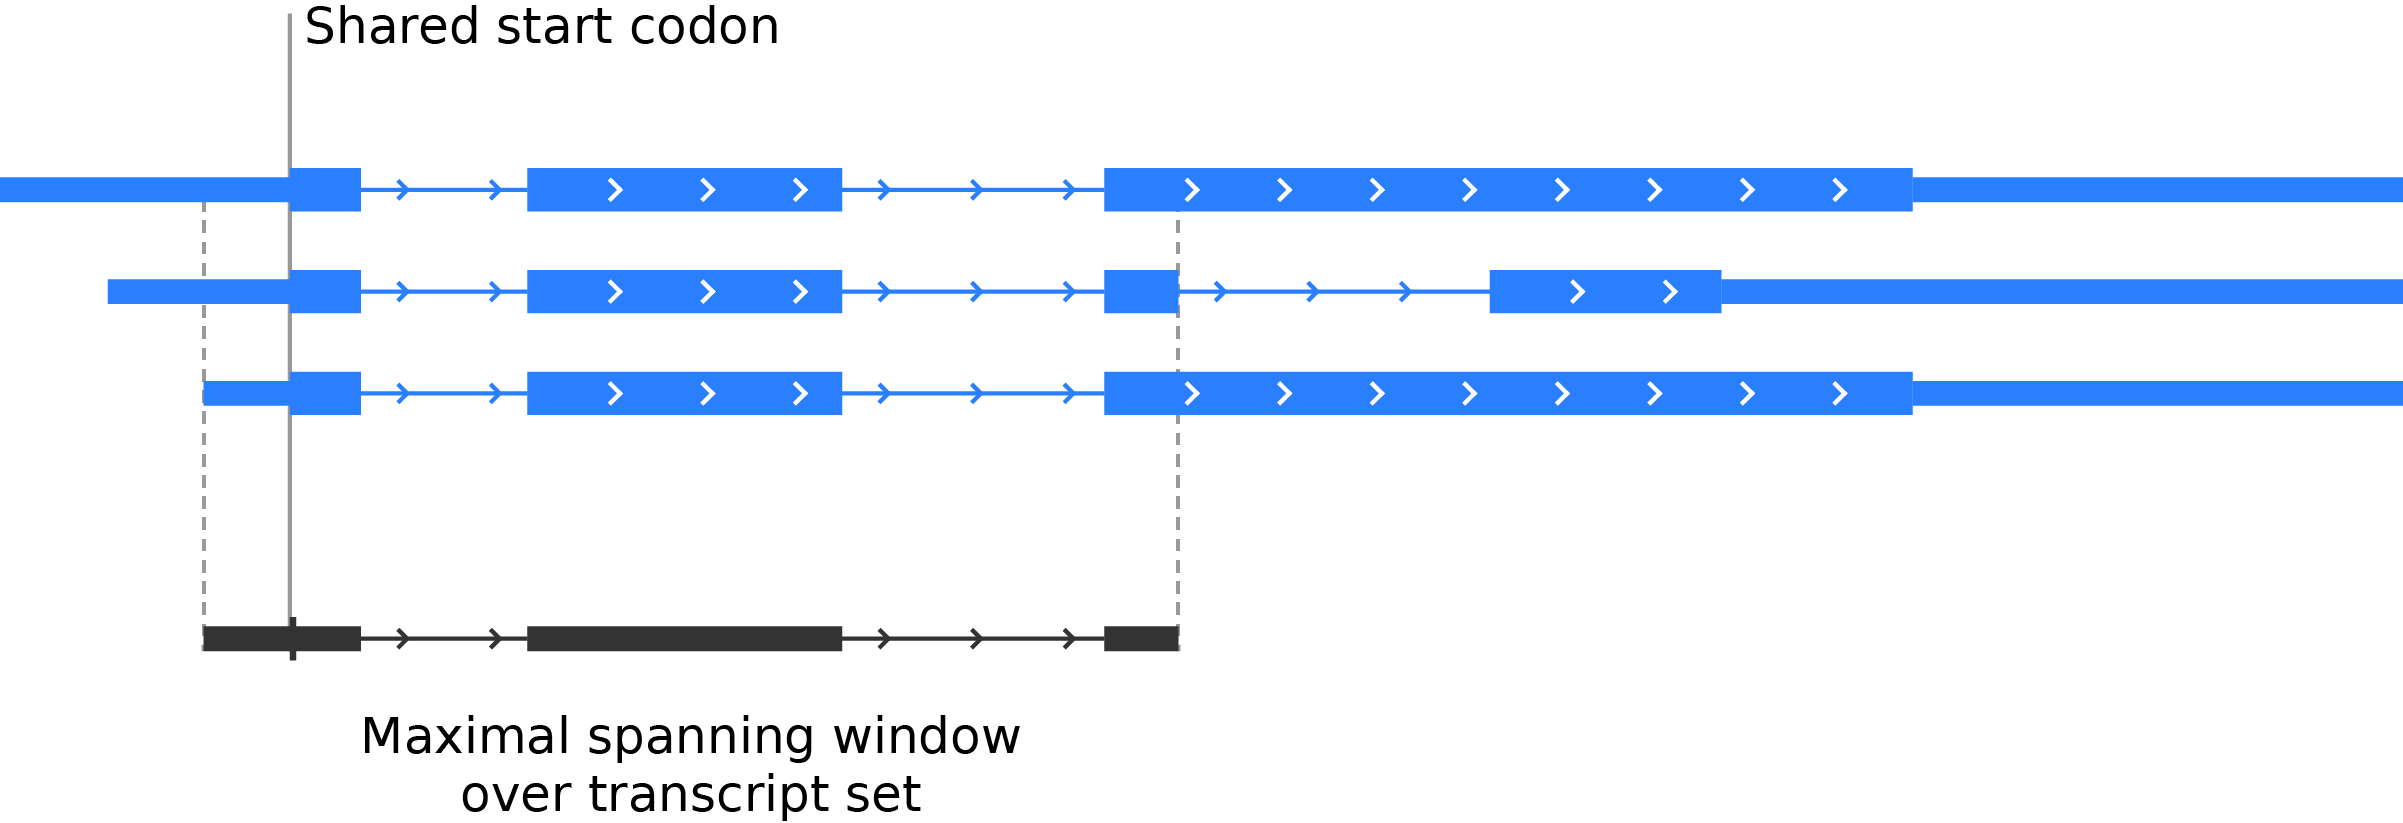 Metagene - maximal spanning window